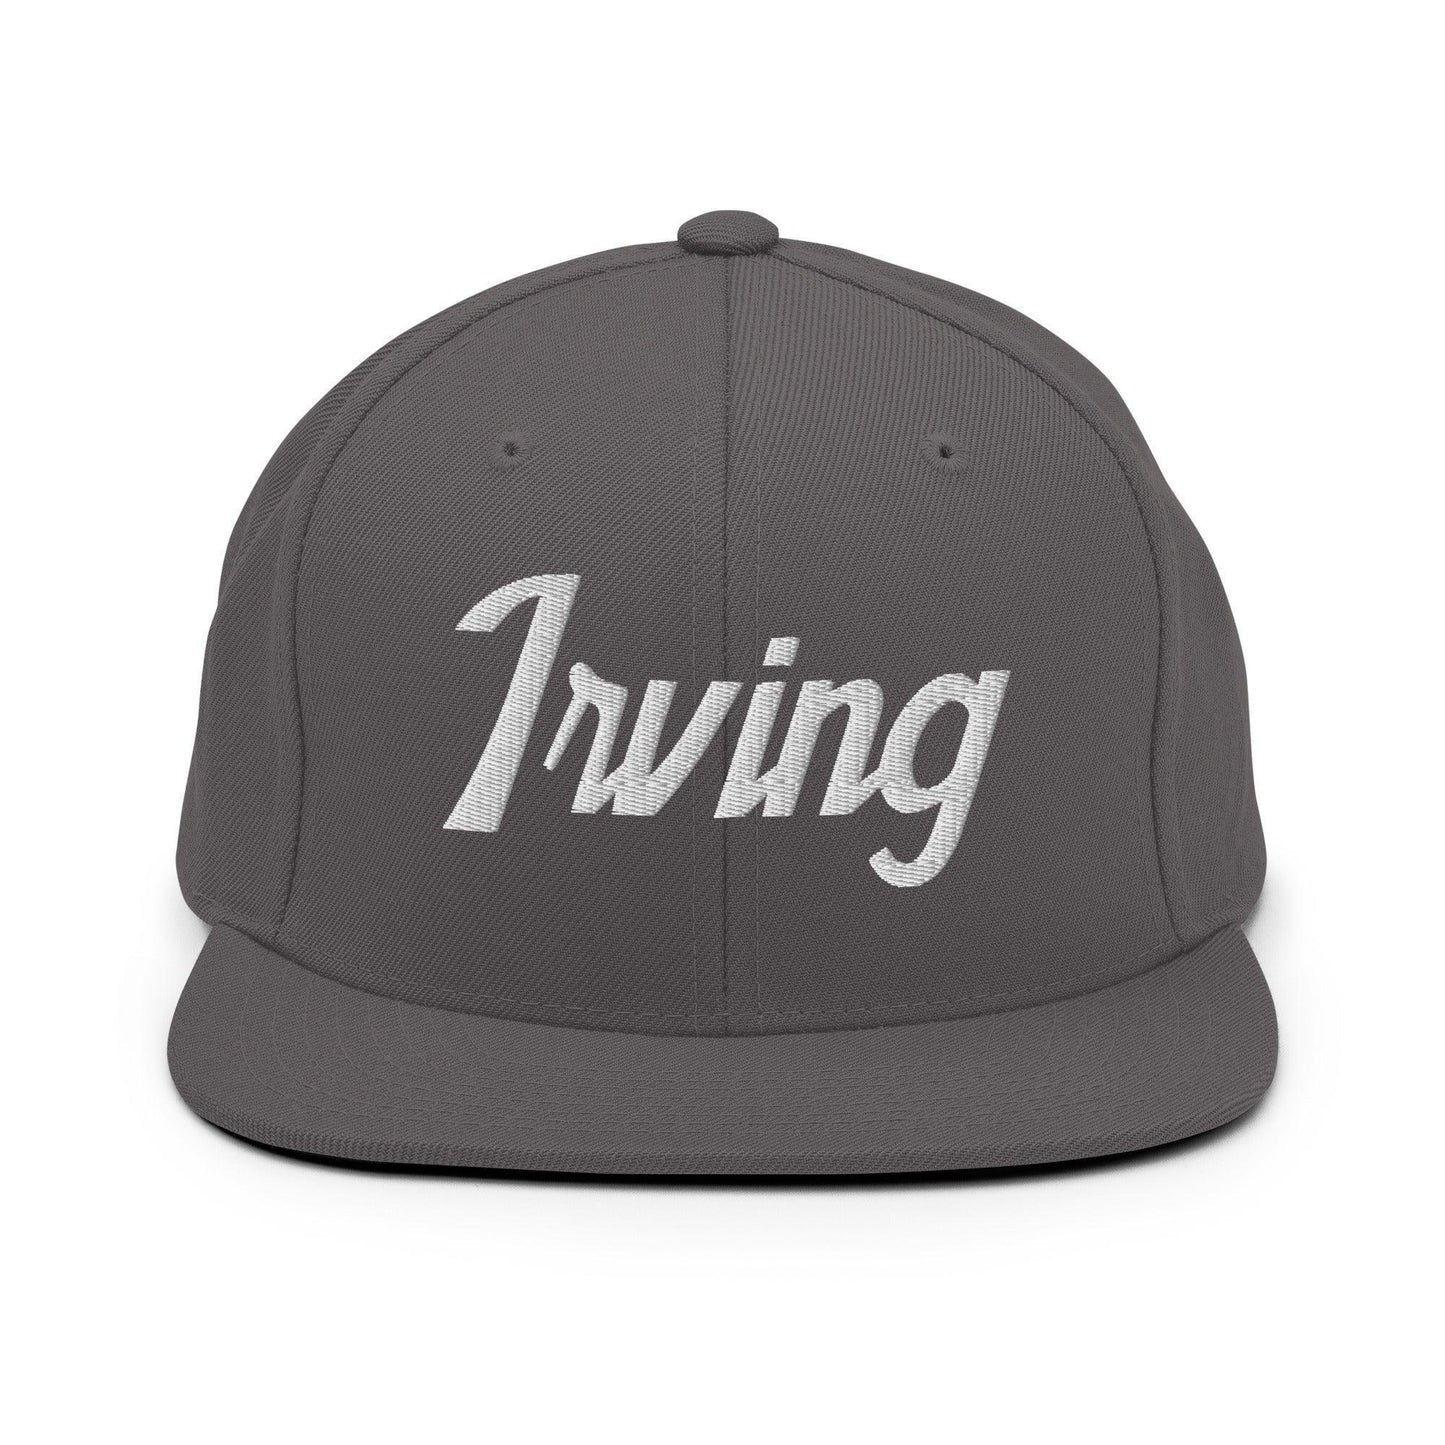 Irving Script Snapback Hat Dark Grey